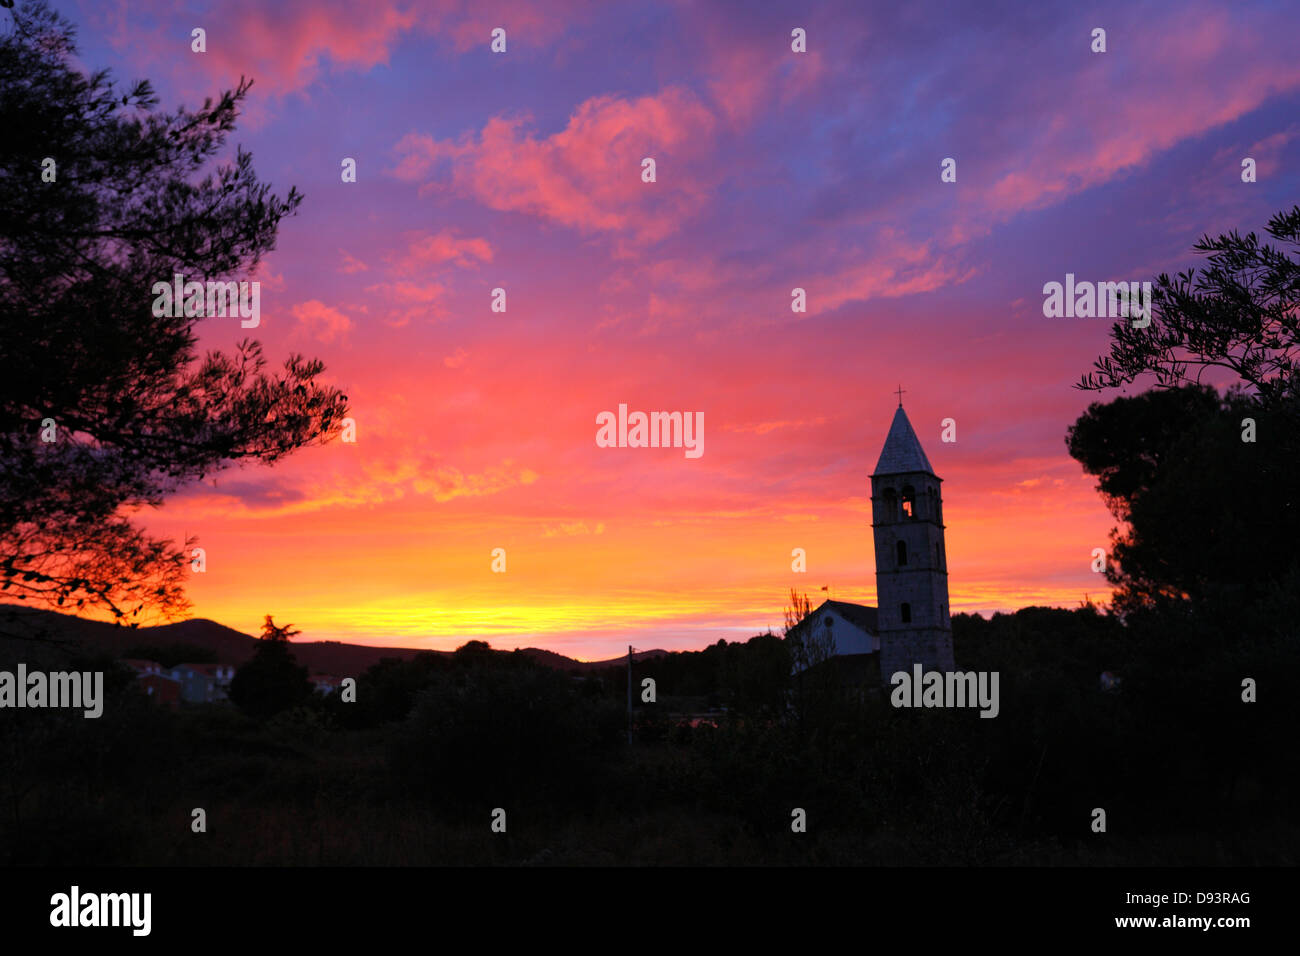 Pasman sunset, Croatia Stock Photo